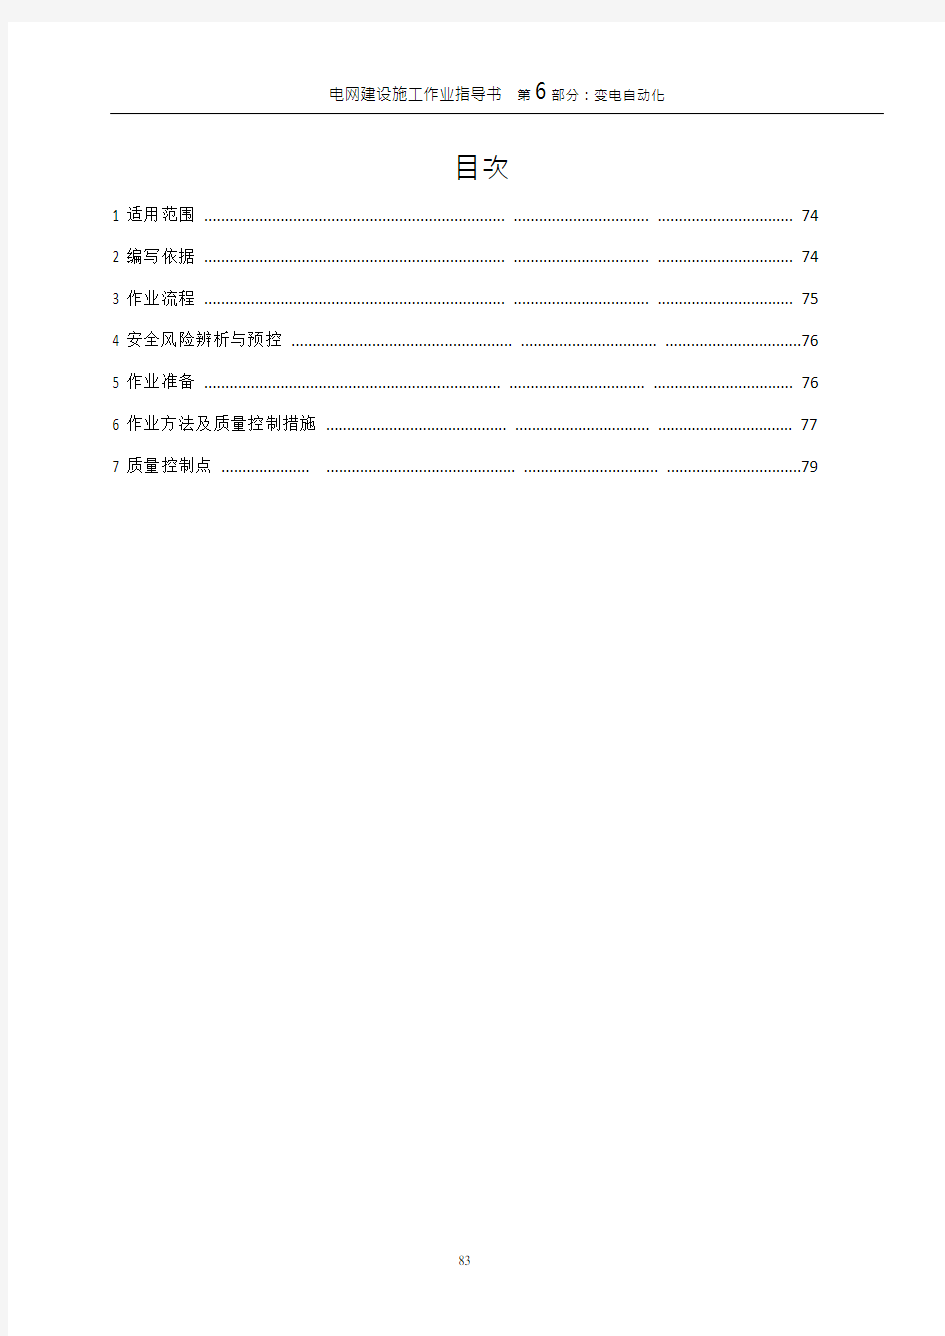 相量测量装置(PMU)_施工作业指导书_(2012)